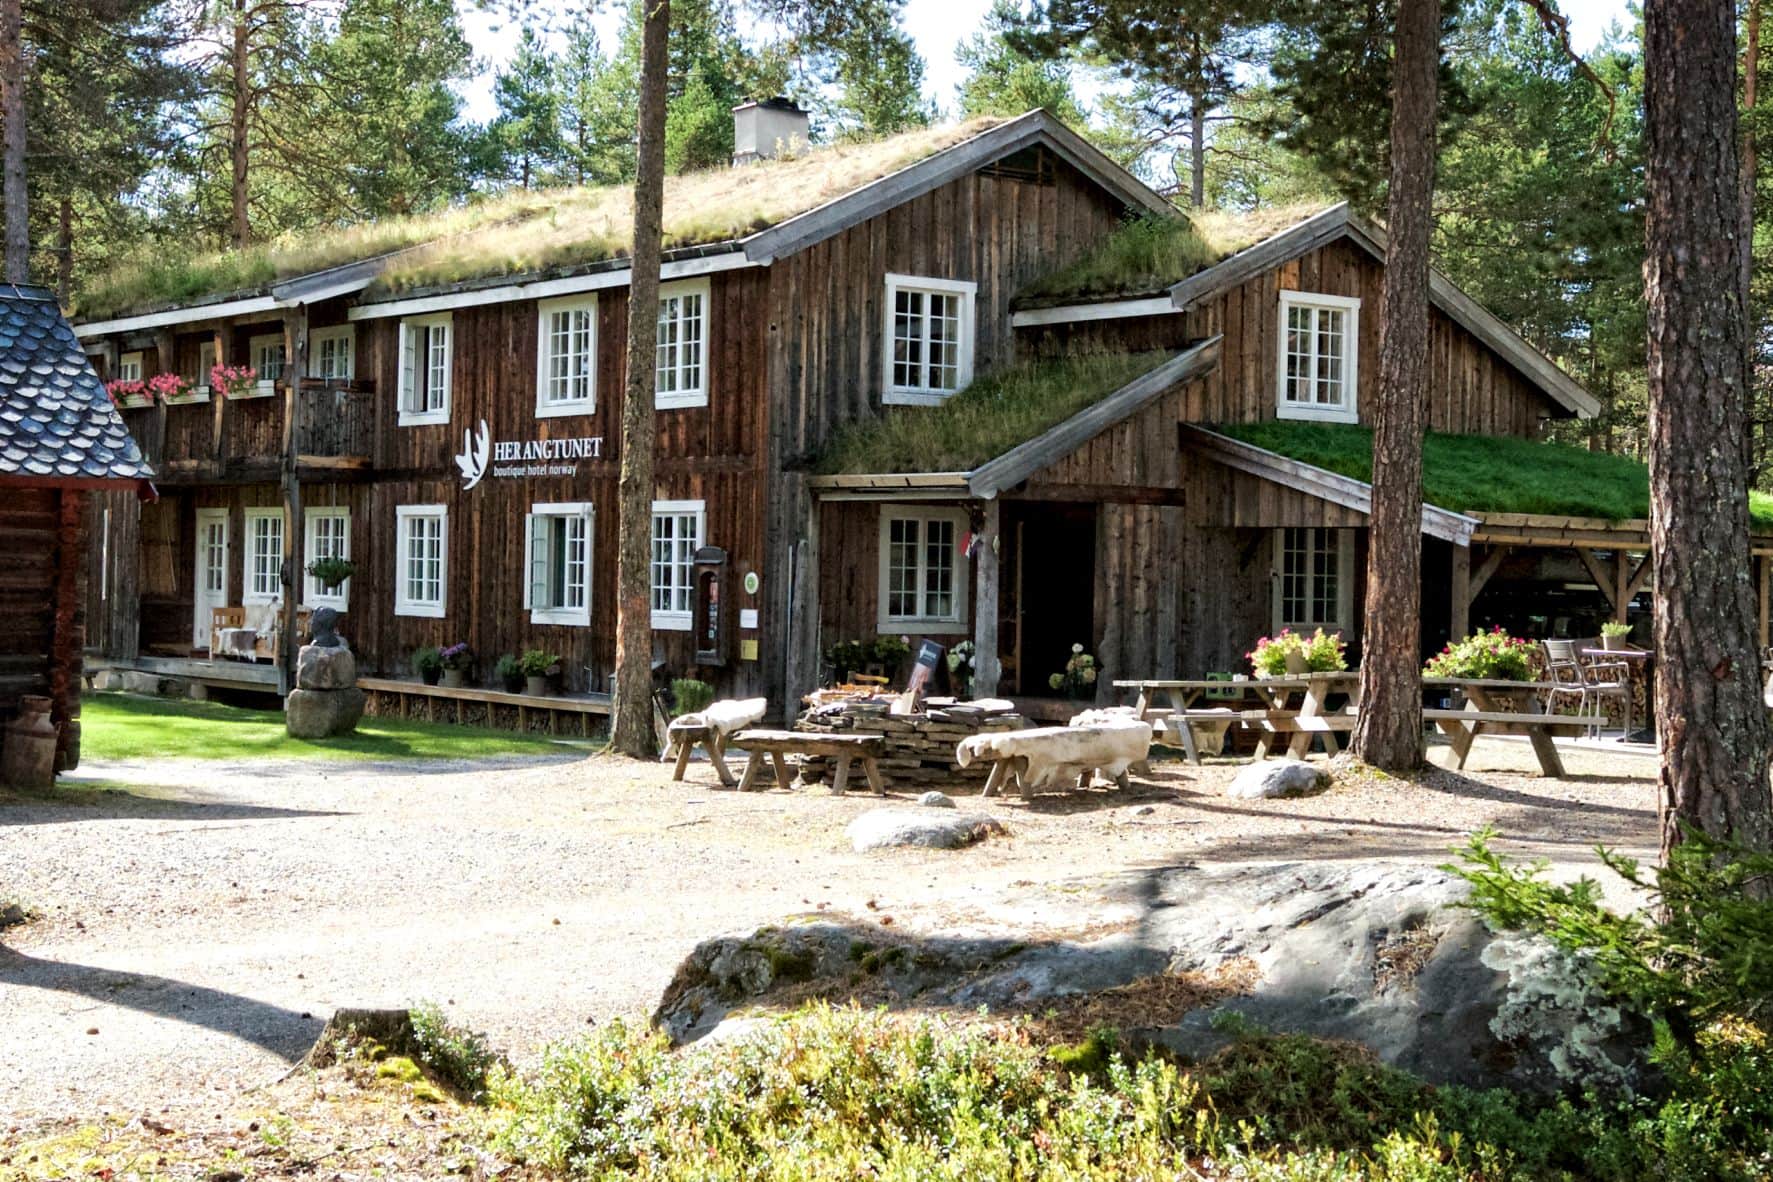 Landgasthof Herangtunet in Norwegen 